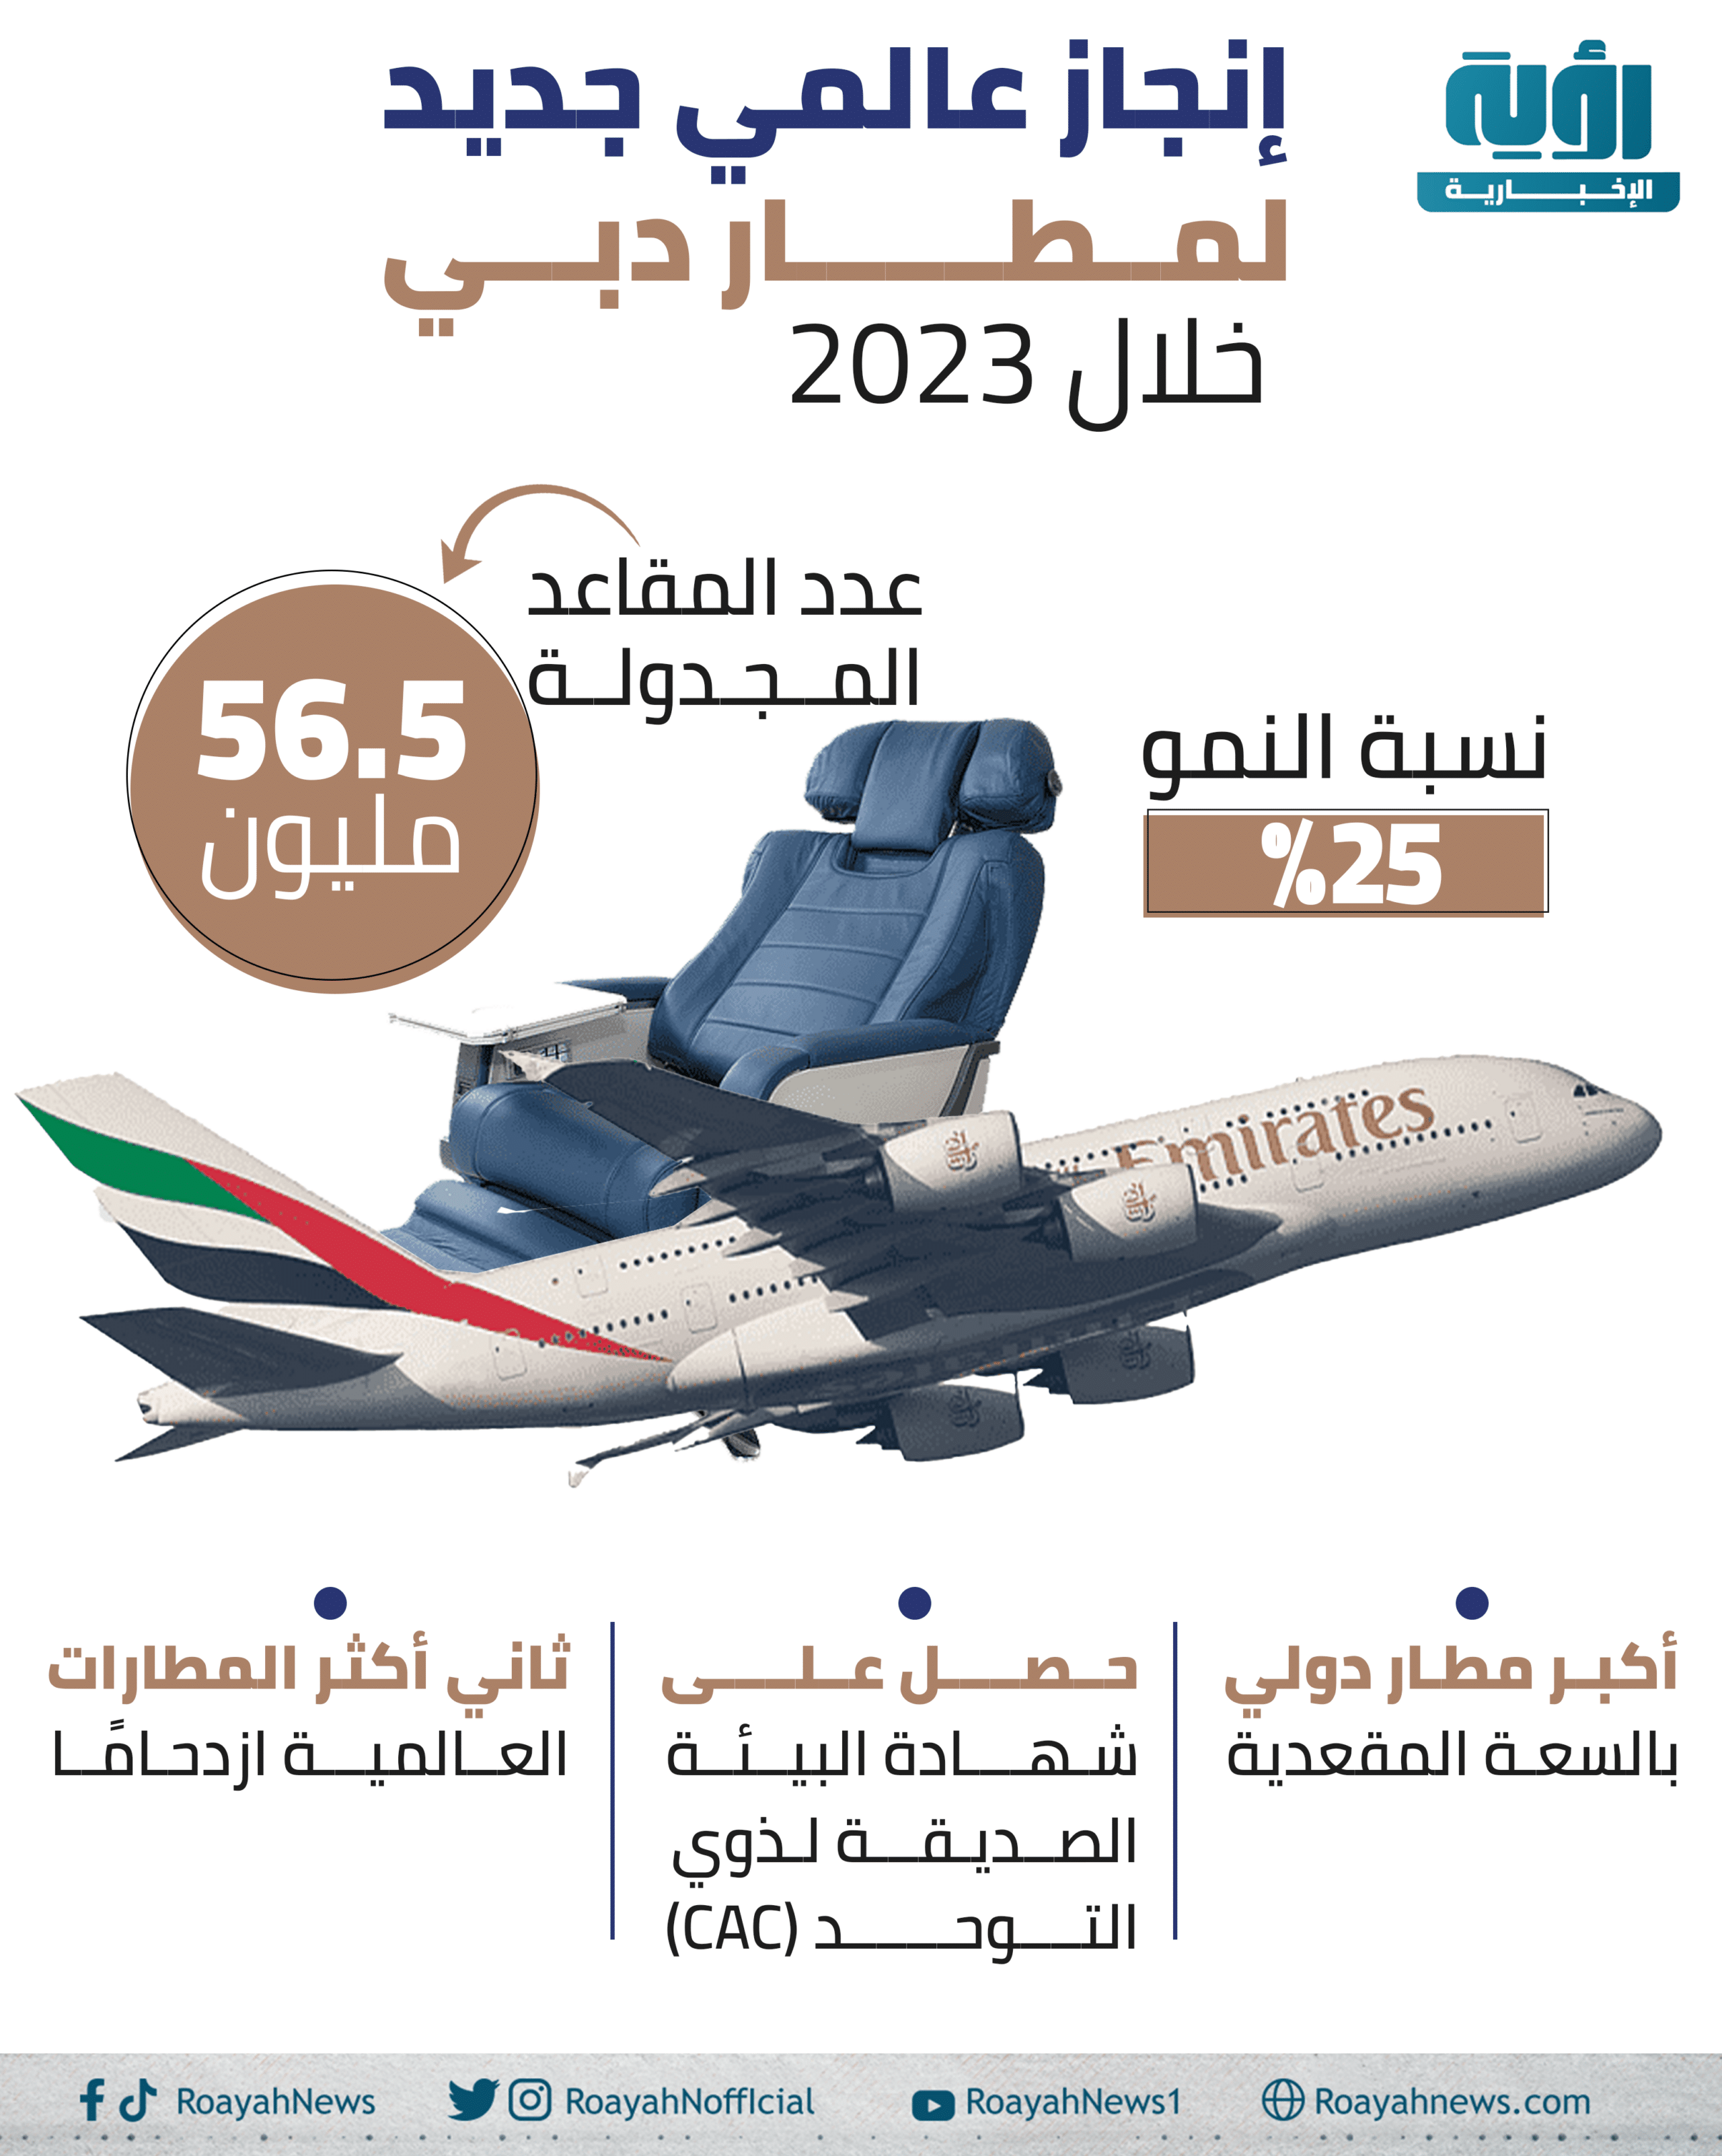 إنجاز عالمي جديد لمطار دبي خلال 2023